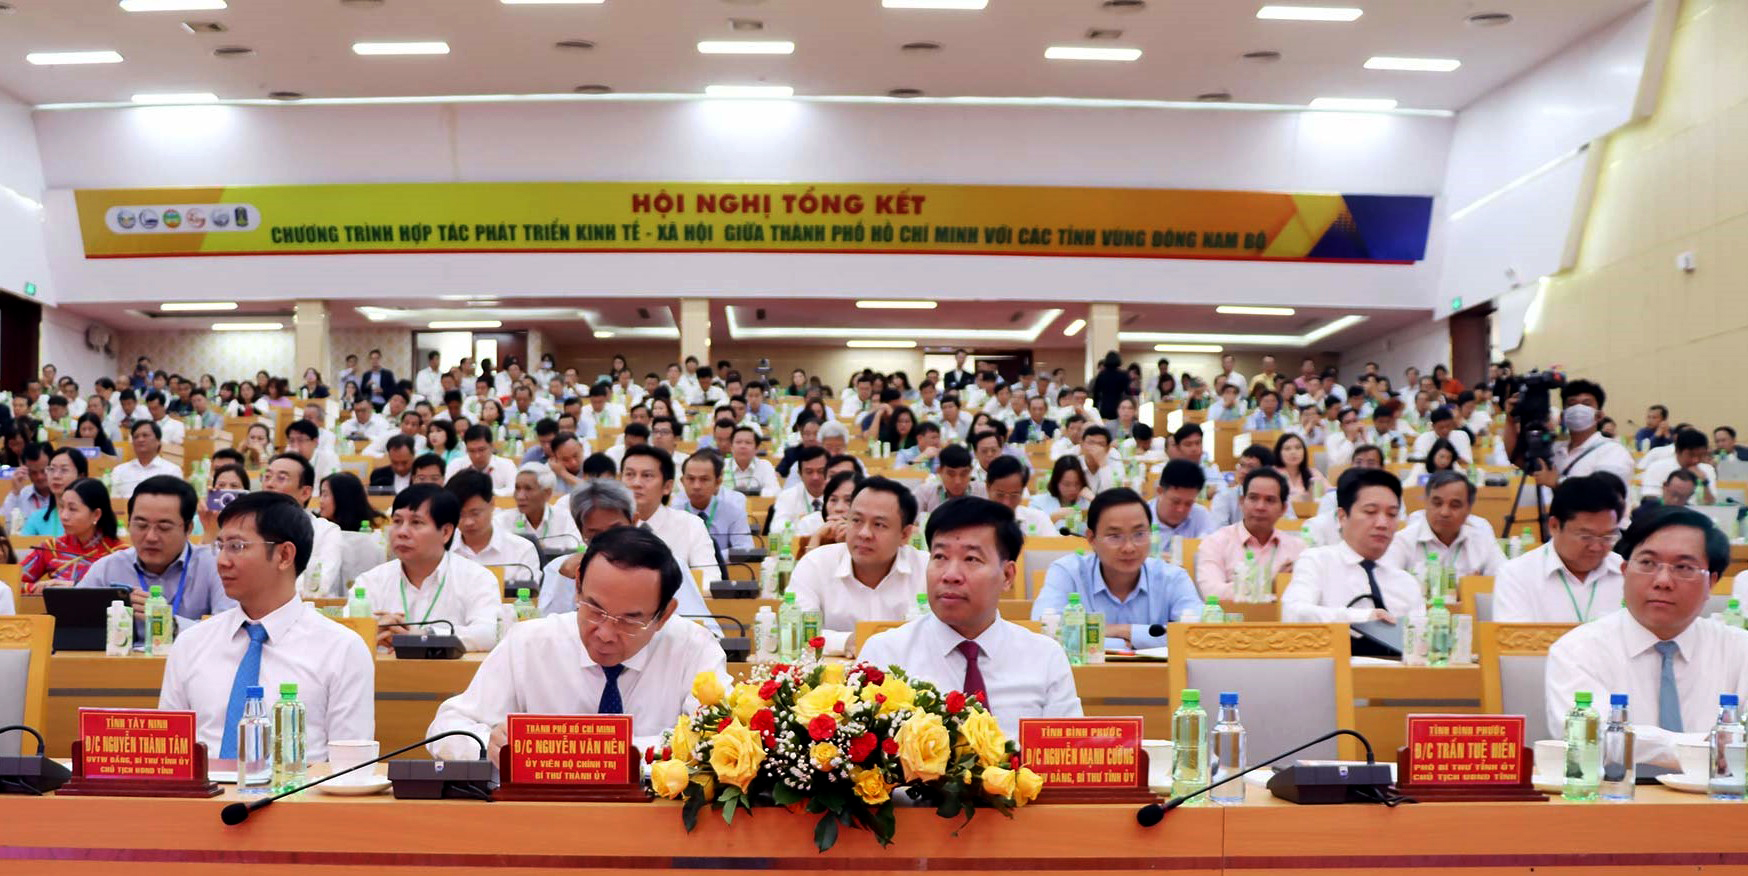 Tổng kết Chương trình hợp tác phát triển kinh tế - xã hội giữa TP. Hồ Chí Minh với các tỉnh vùng Đông Nam Bộ